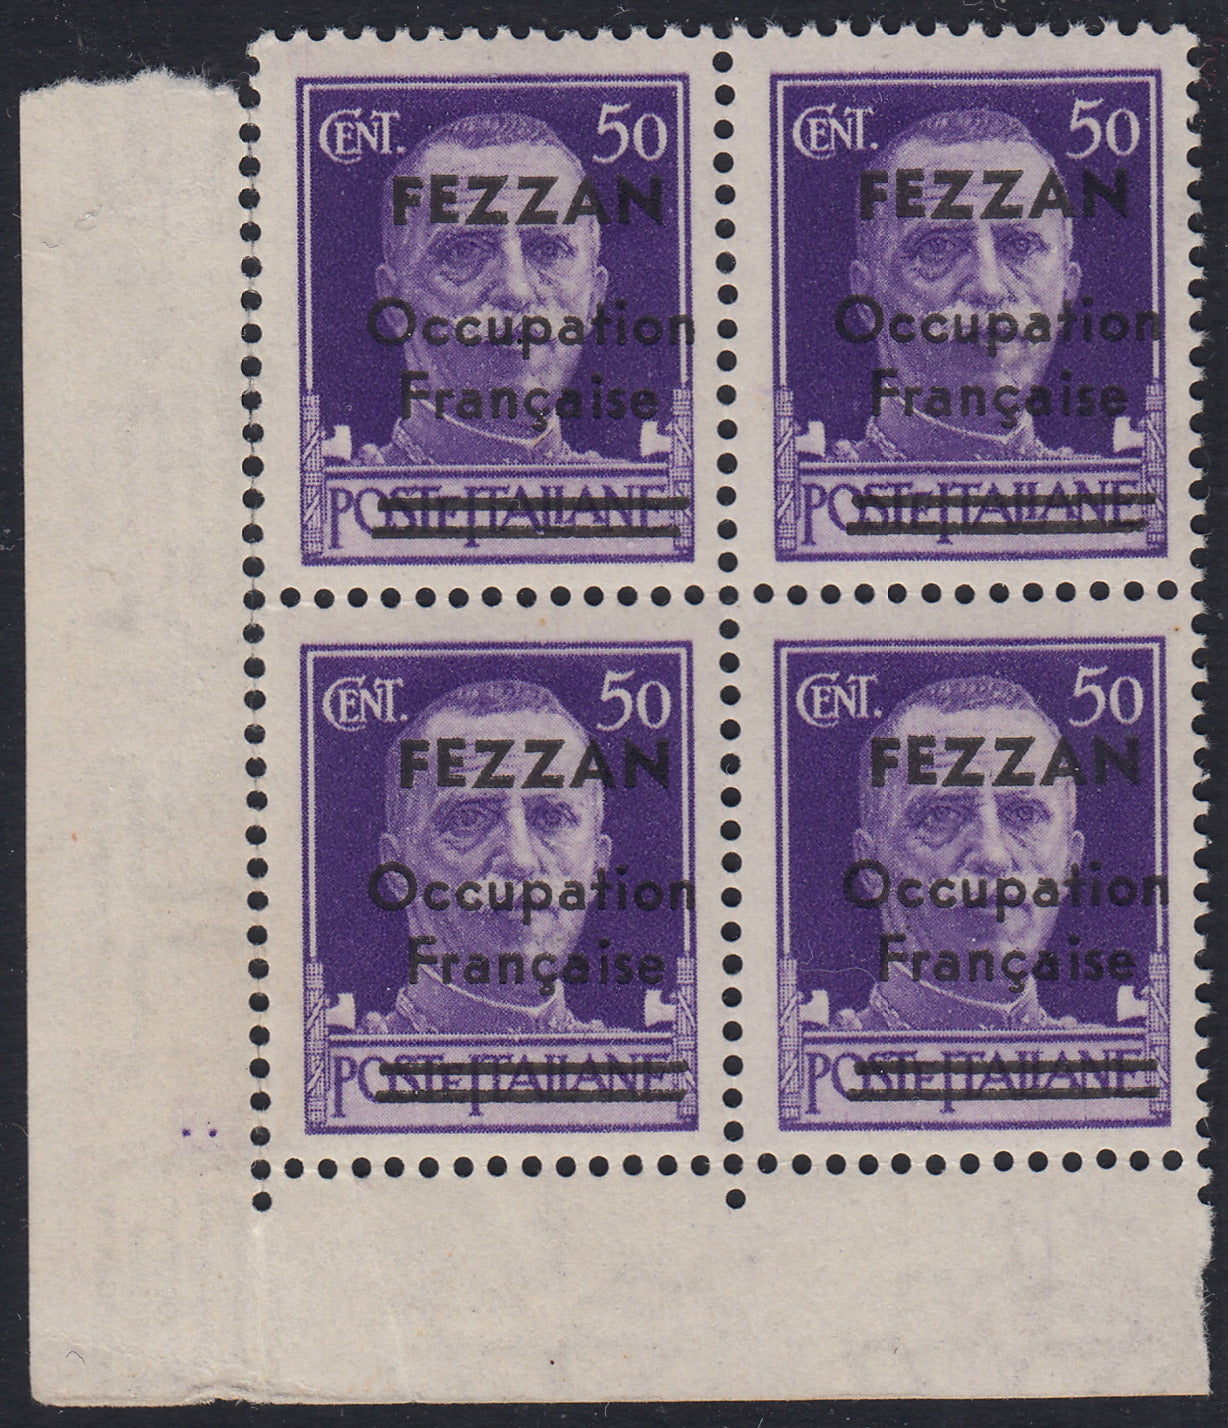 1945 - Ocupación francesa de Fezzan, sello italiano de la serie Imperial c. 50 FEZZAN Occupation Francaise sobreimpresos violetas y barras en Poste Italiane nuevos con goma intacta en bloque de cuatro (1). 